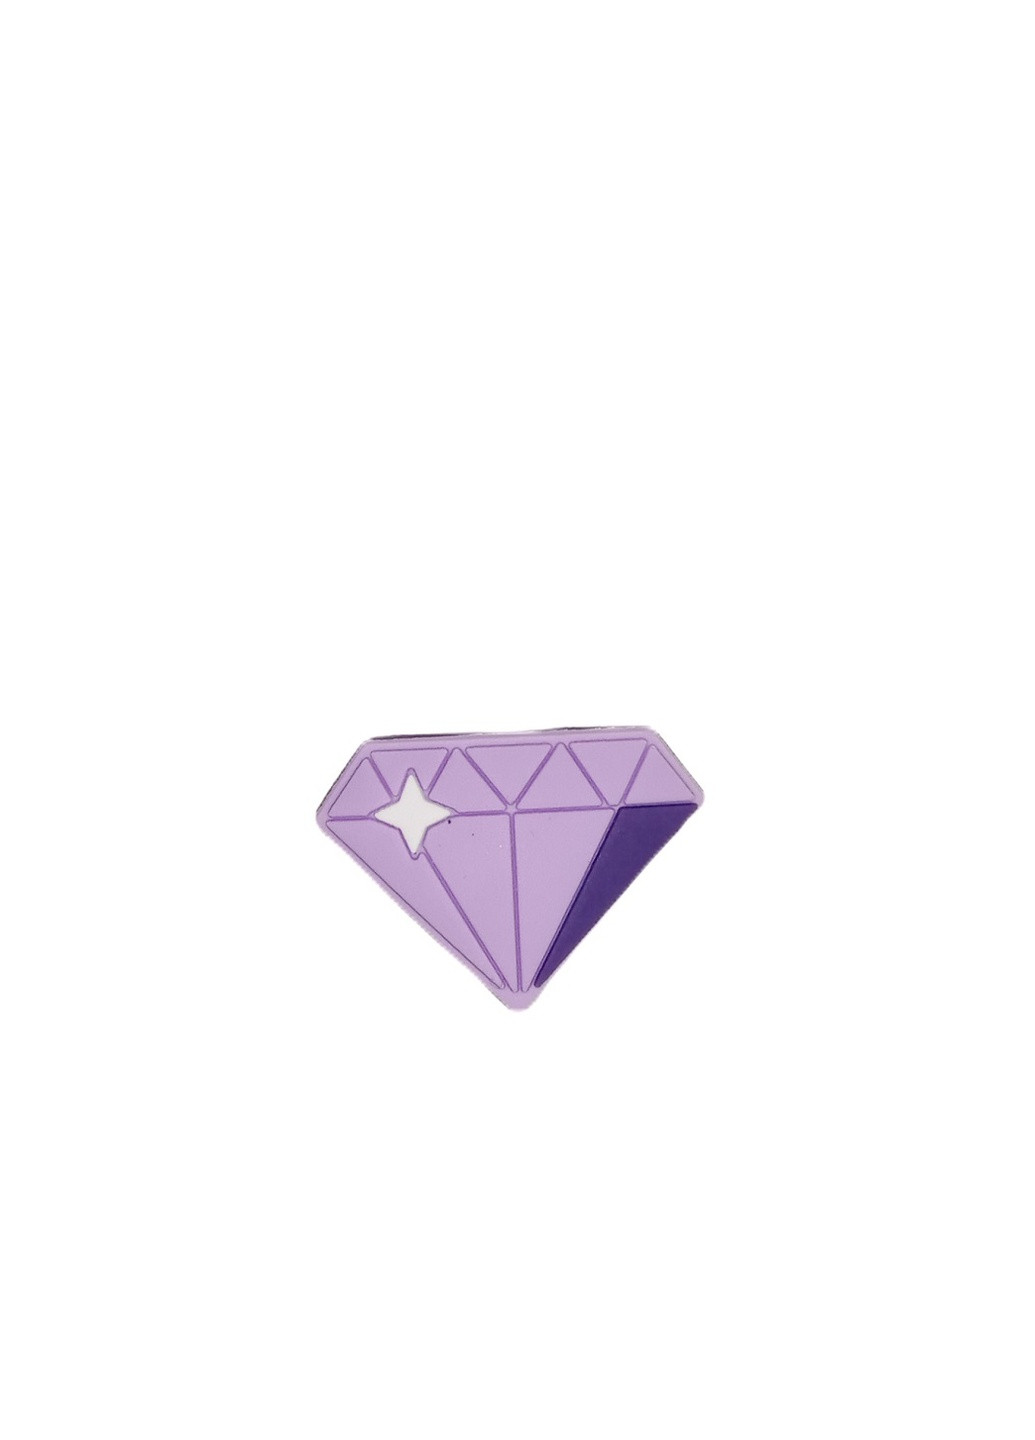 Джибитсы для Алмаз (Брилиант) фиолетовый №52 Crocs jibbitz (258471938)